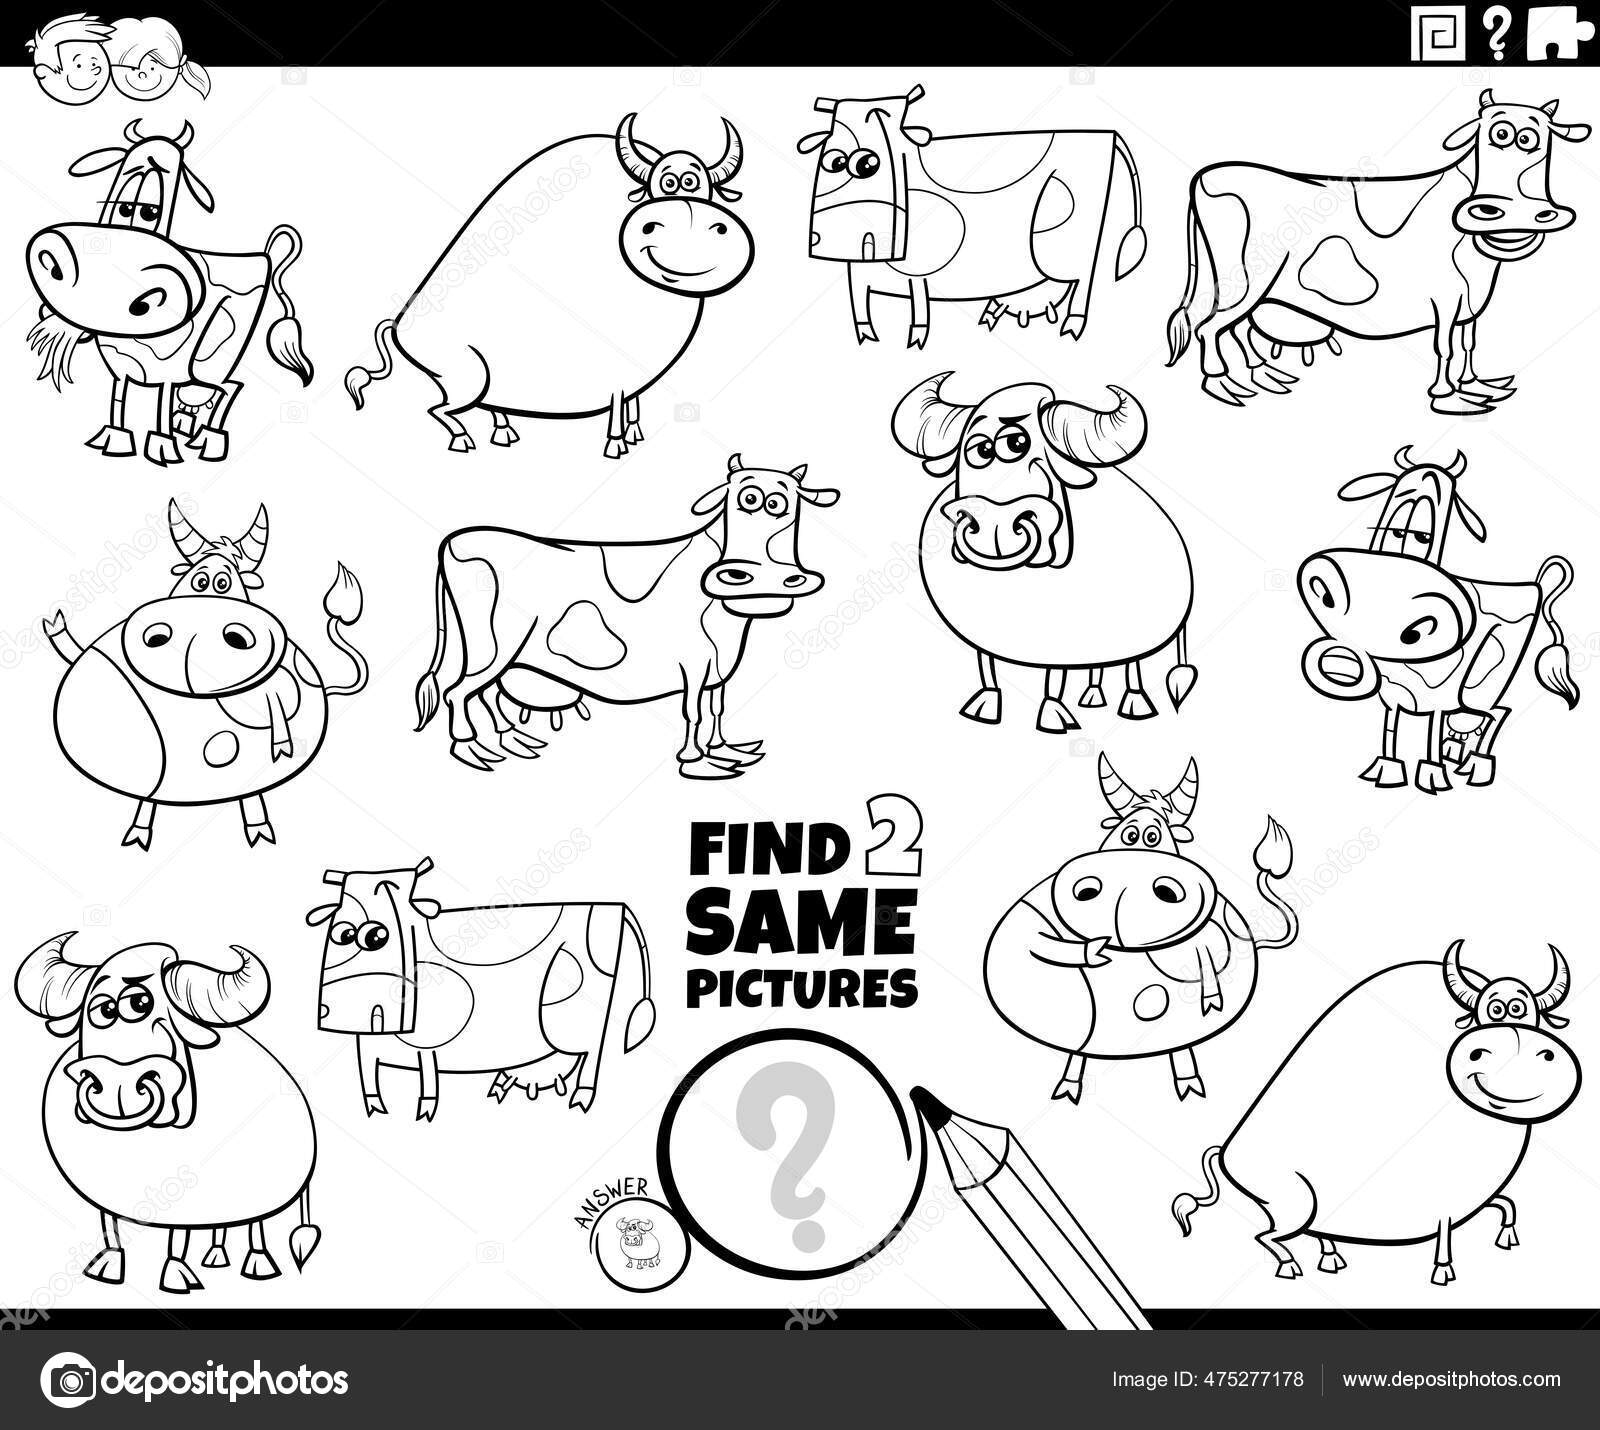 Desenho de jogo de diferenças com personagens de animais para colorir